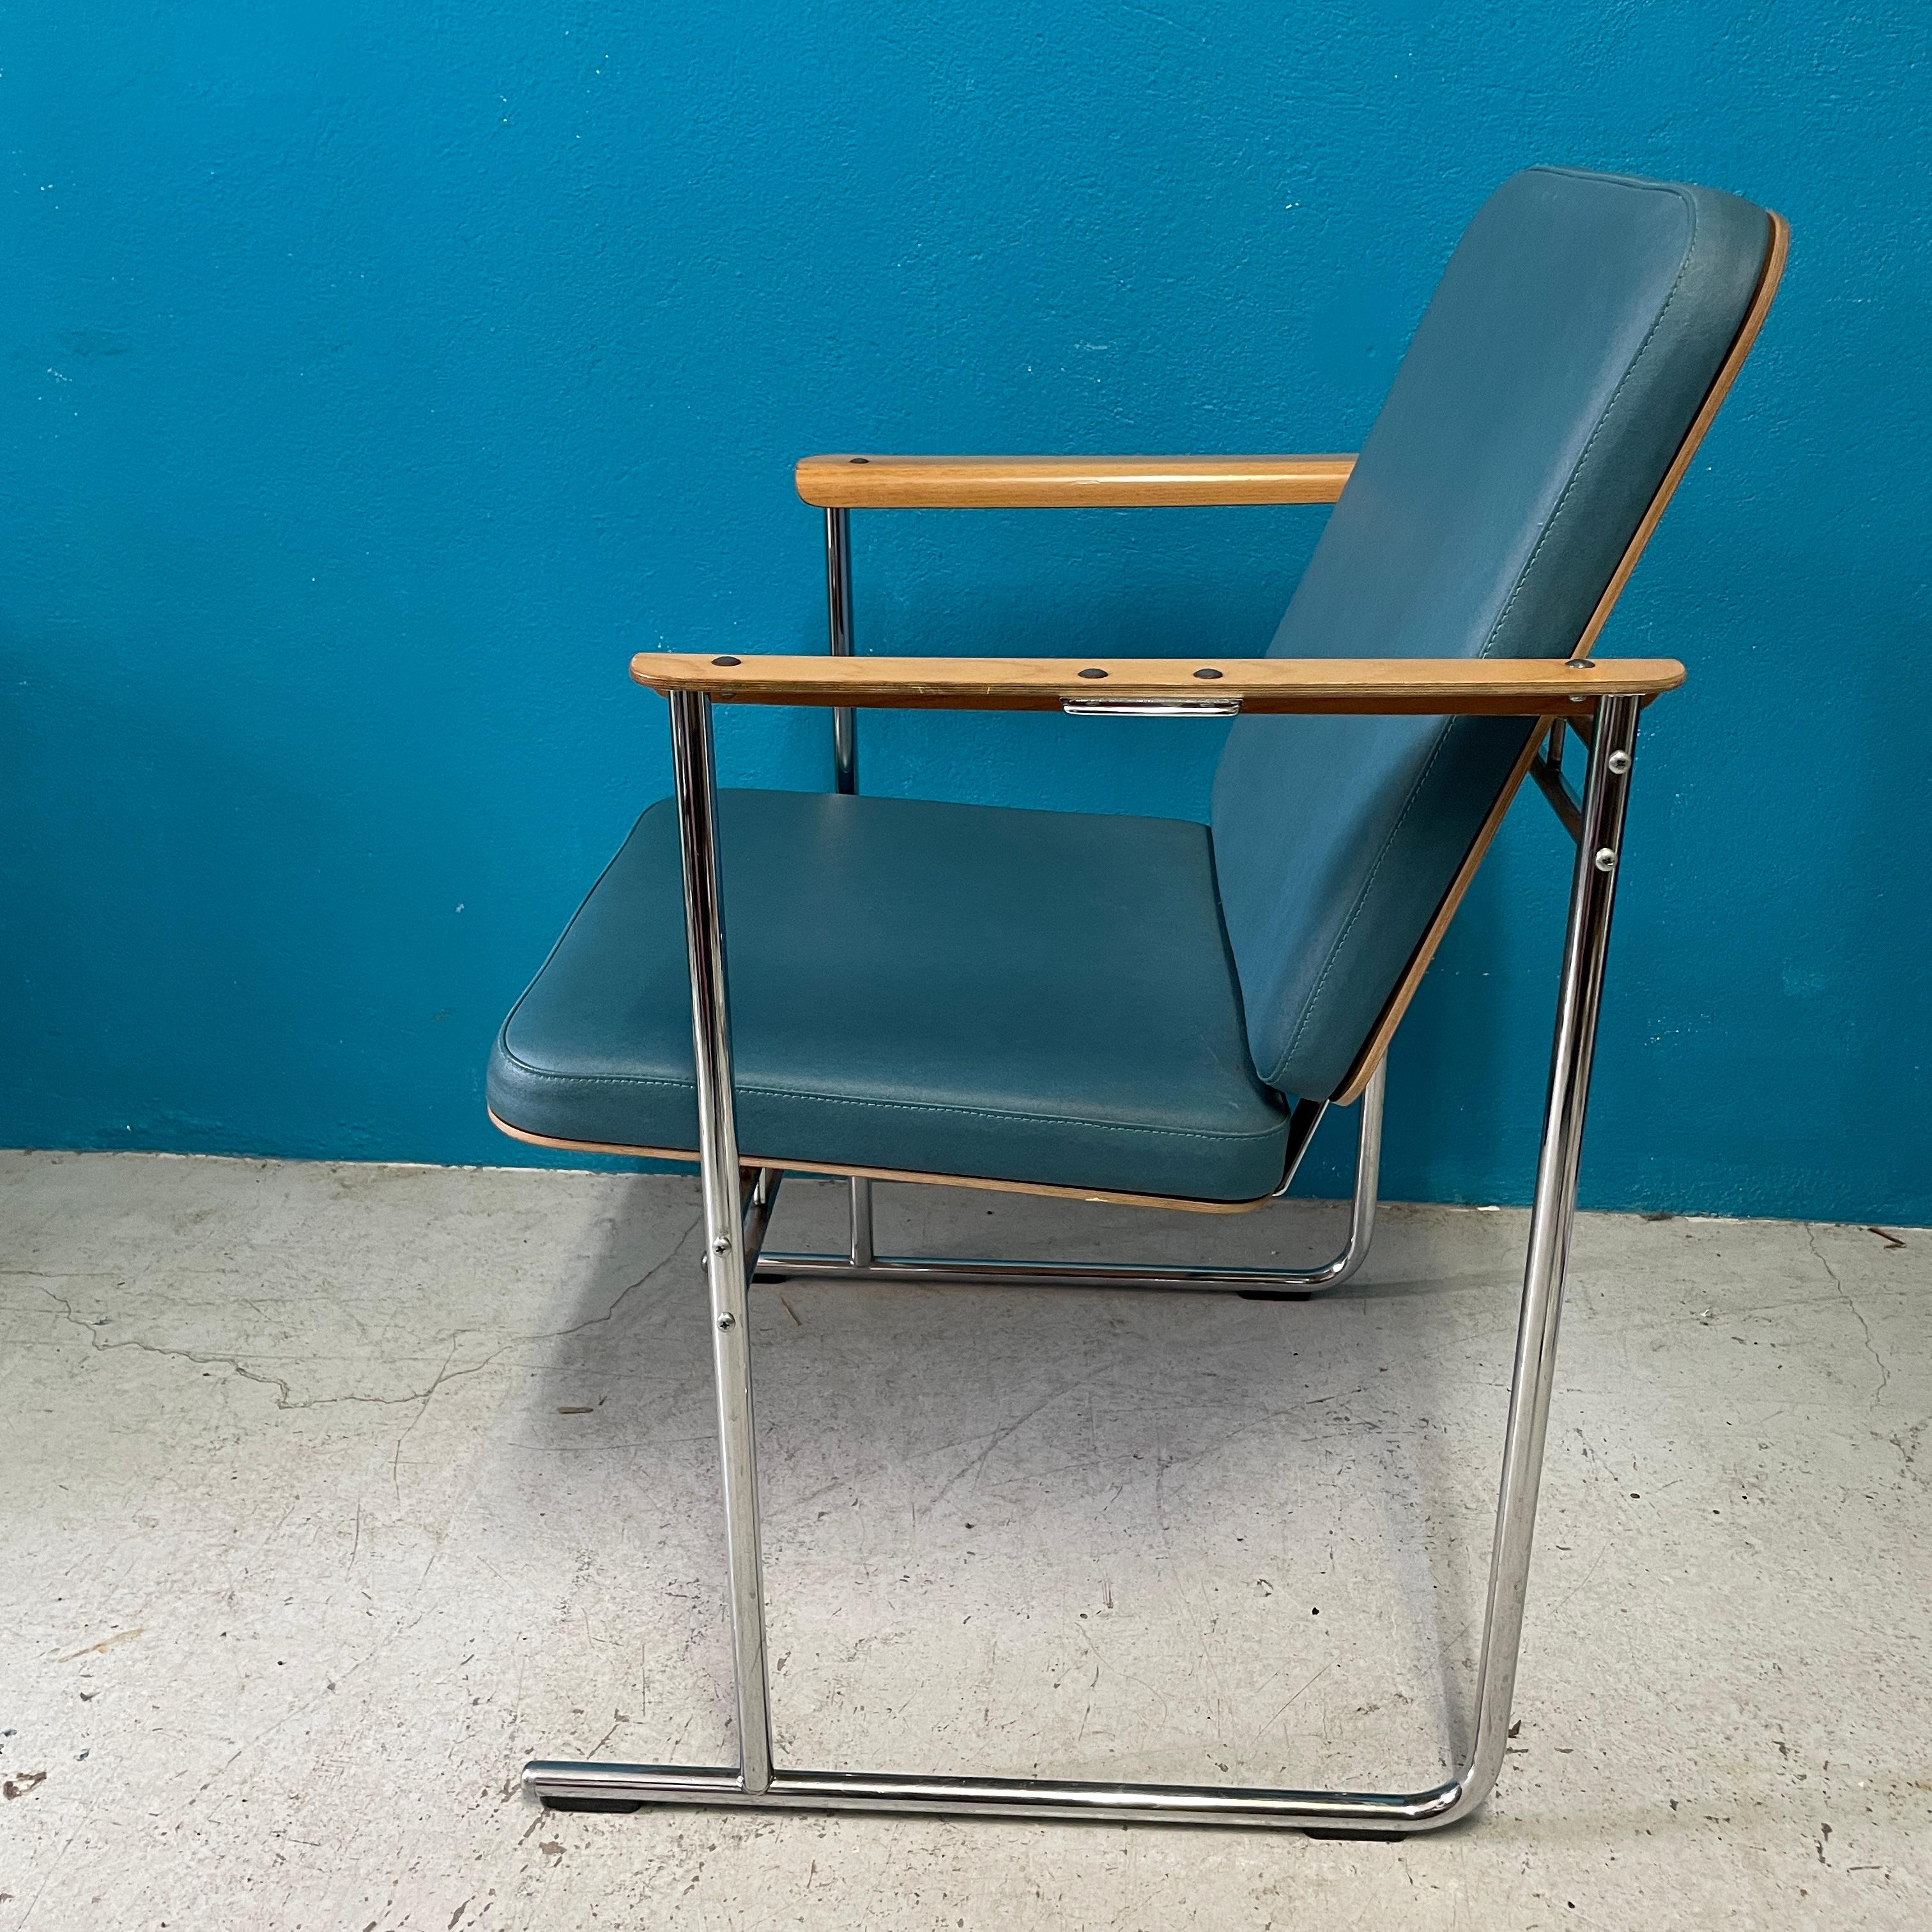 Fauteuil Skaala conçu par Yrjö Kukkapuro pour Avarte Finlande 1980's. 

Les chaises conçues par Kukkapuro sont réputées pour leur bonne ergonomie, comme cette chaise en est un bon exemple.

L'assise, le dossier et les accoudoirs sont en contreplaqué